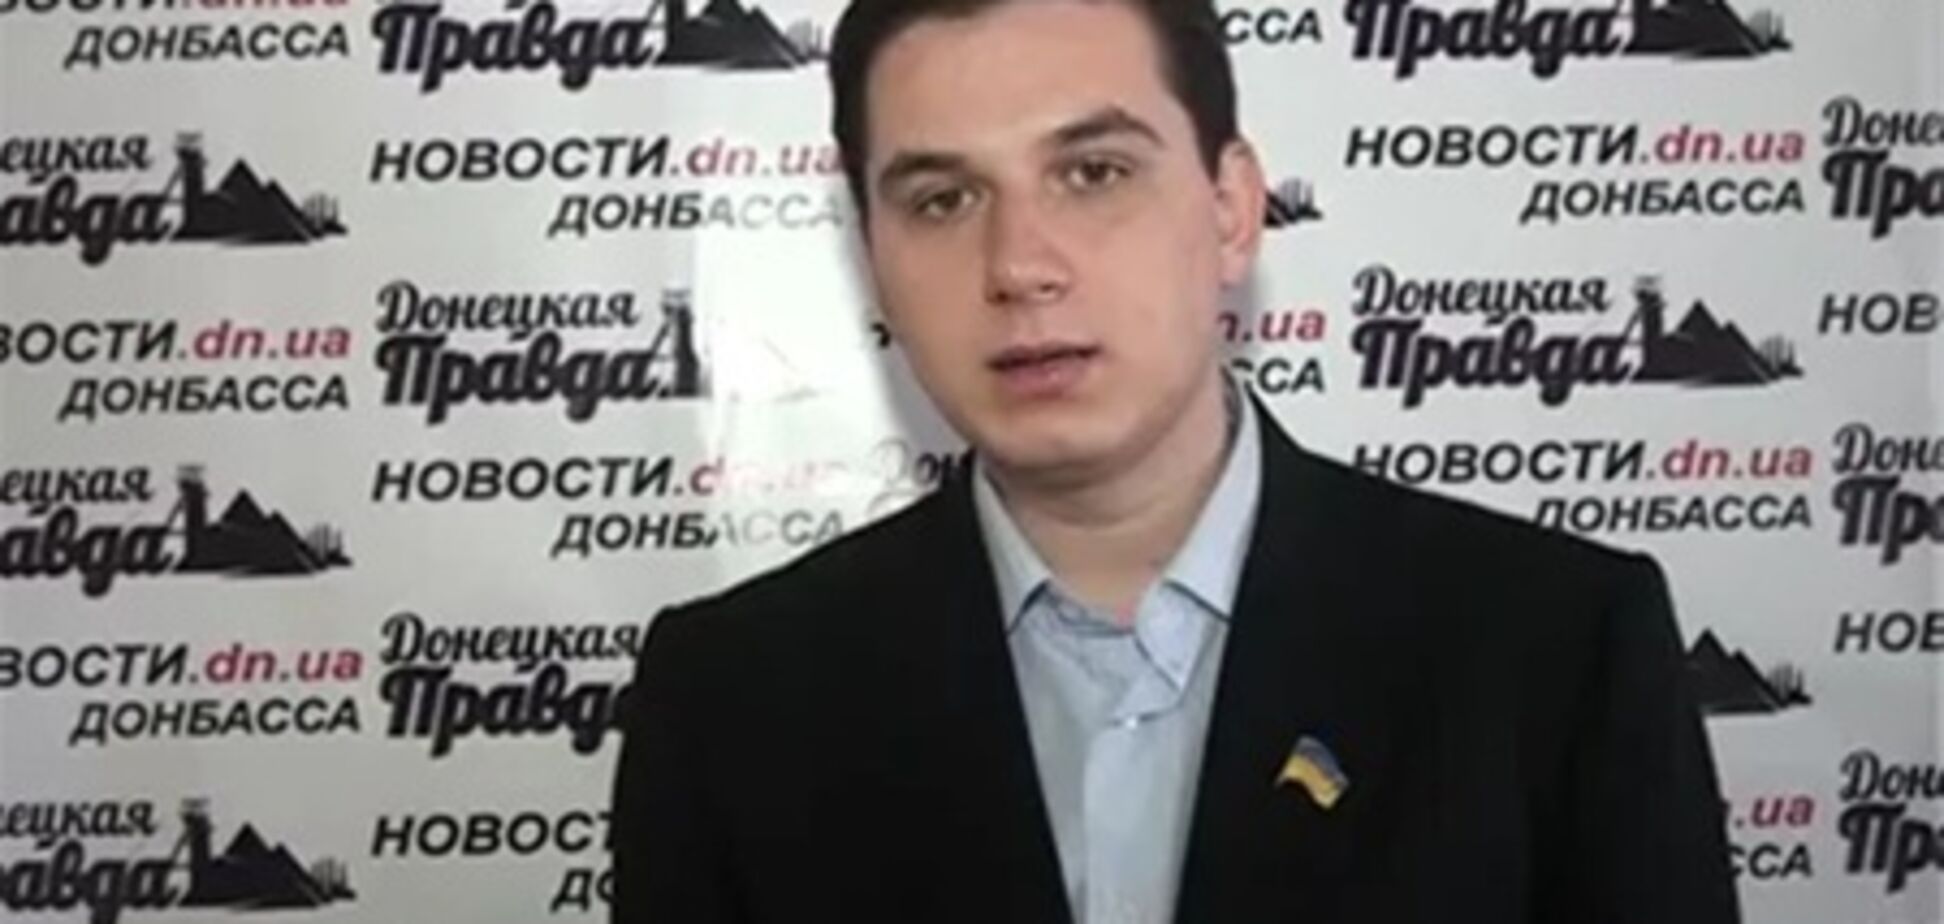 Суд обязал радикала извиниться перед милицией Донецка